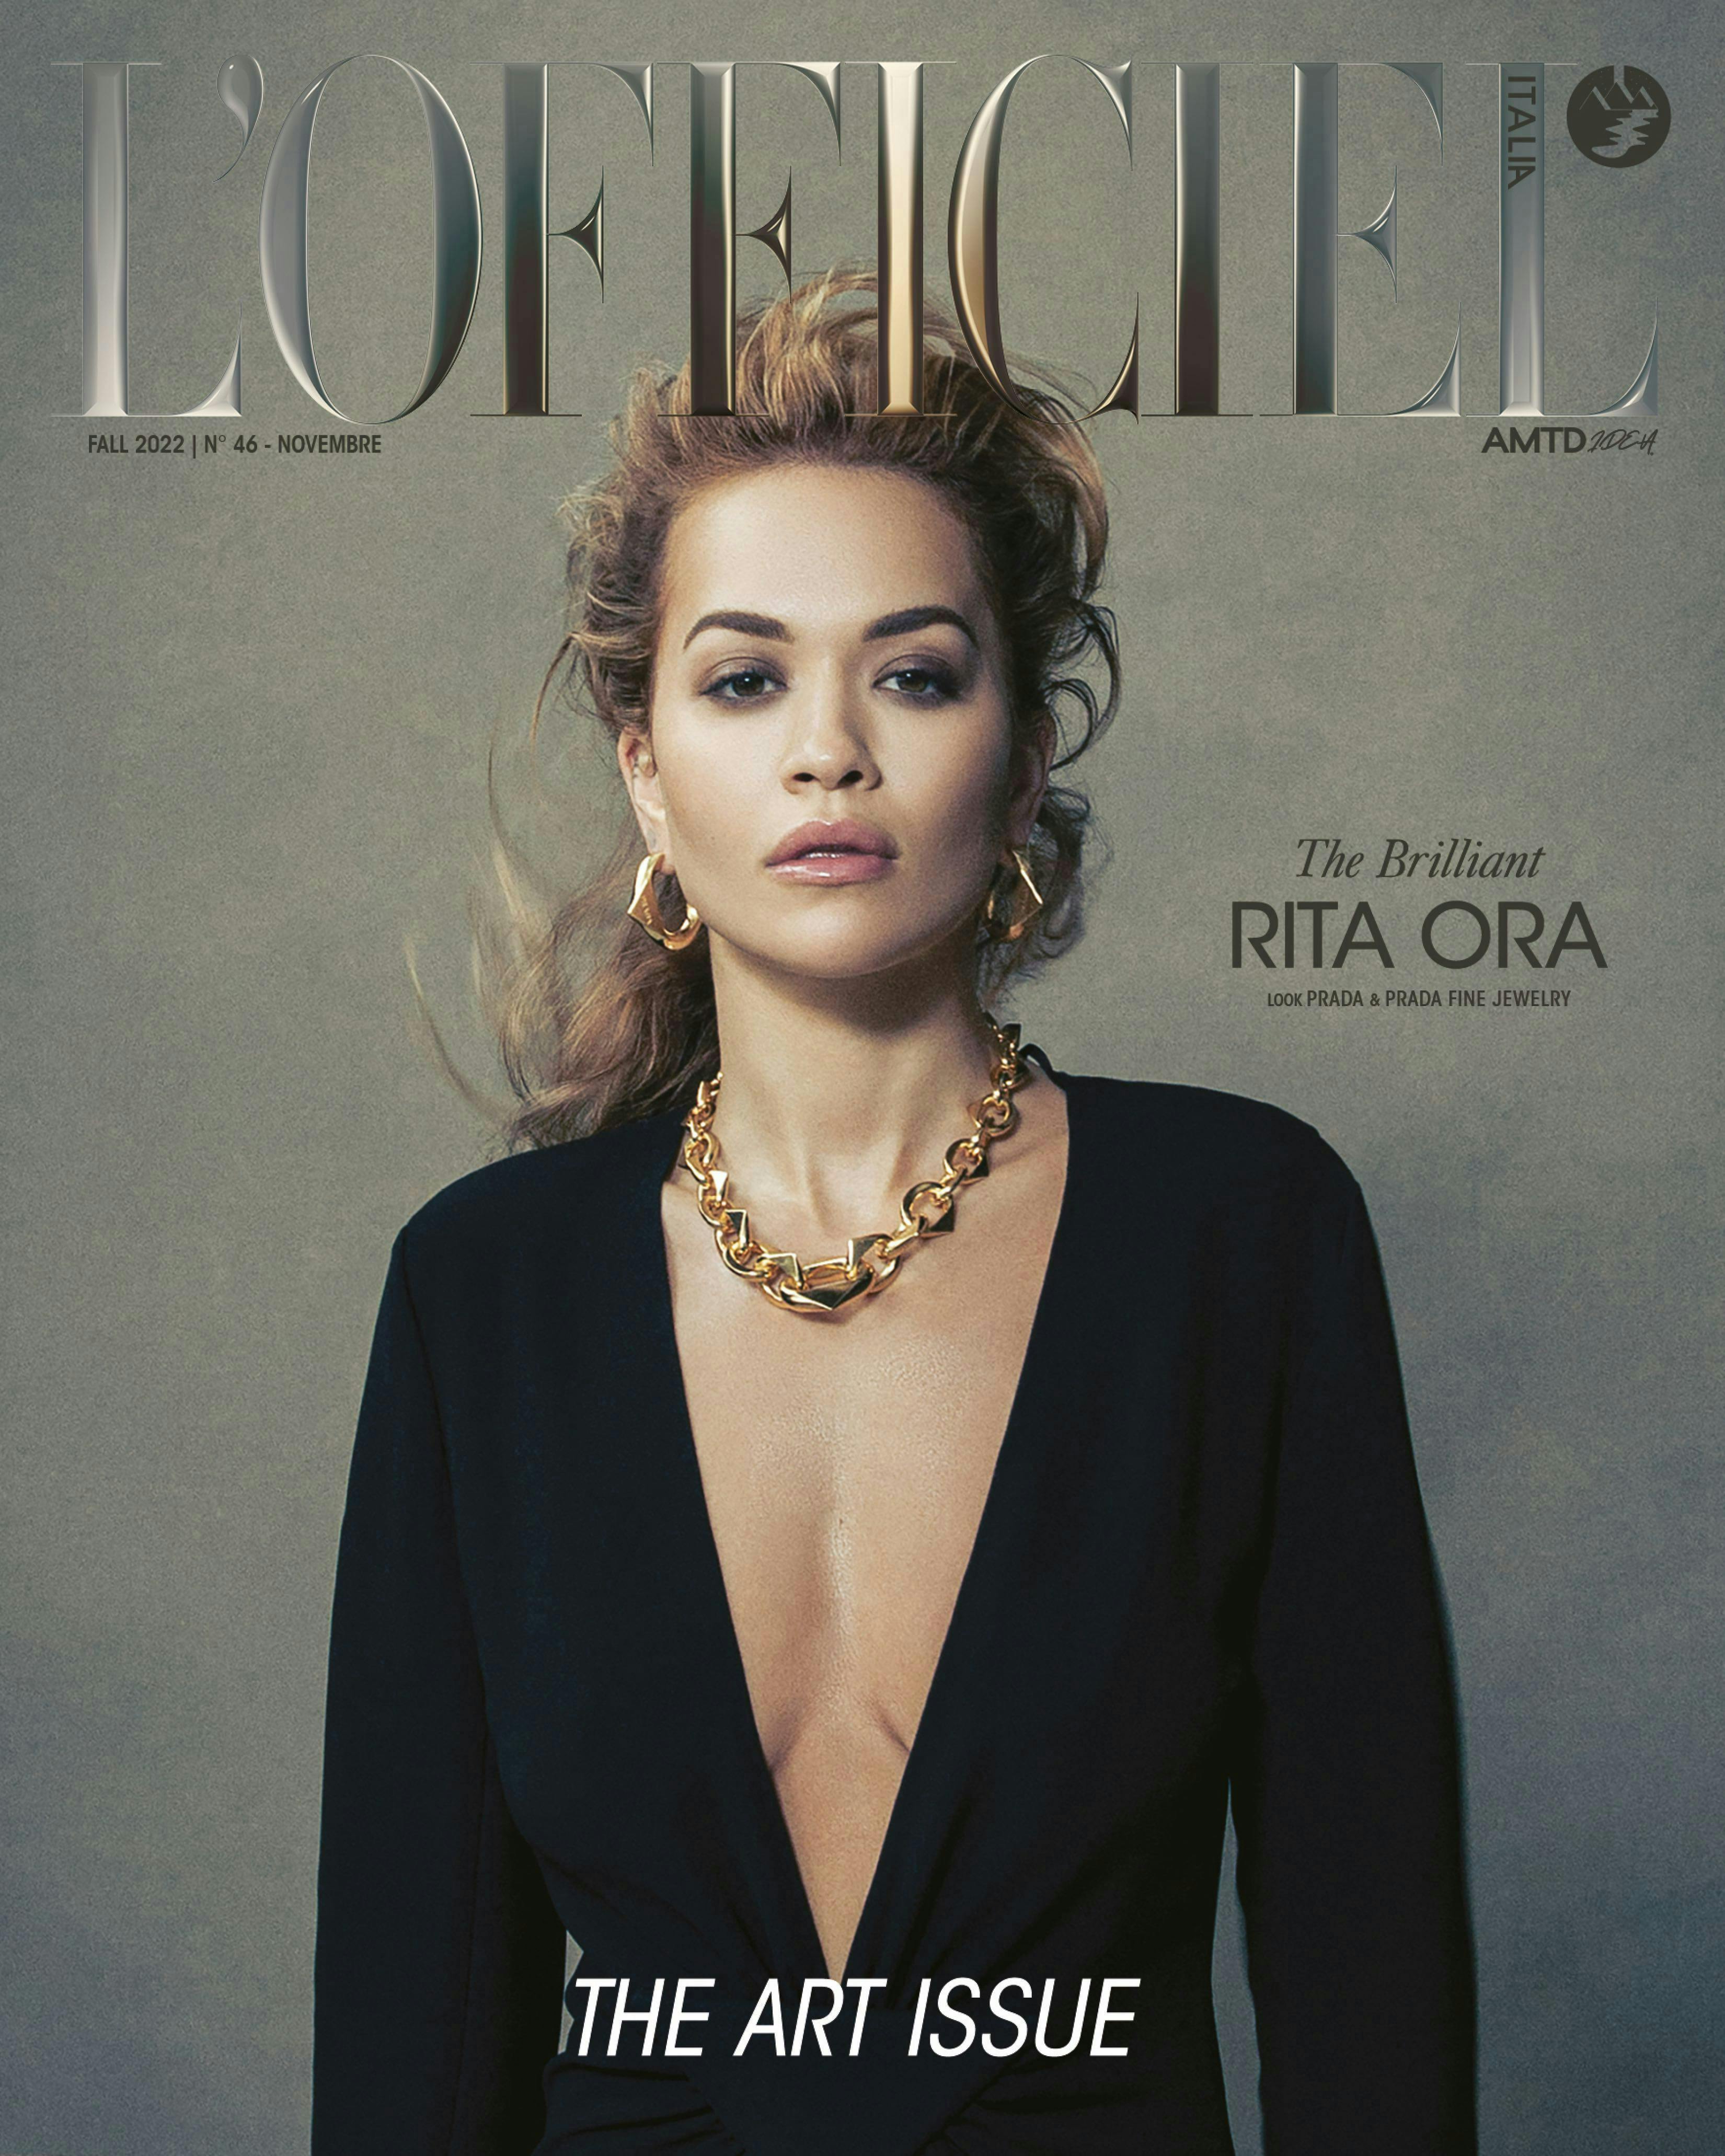 Rita Ora indossa Abito, PRADA, orecchini e collana "Eternal Gold" in oro, PRADA FINE JEWELRY